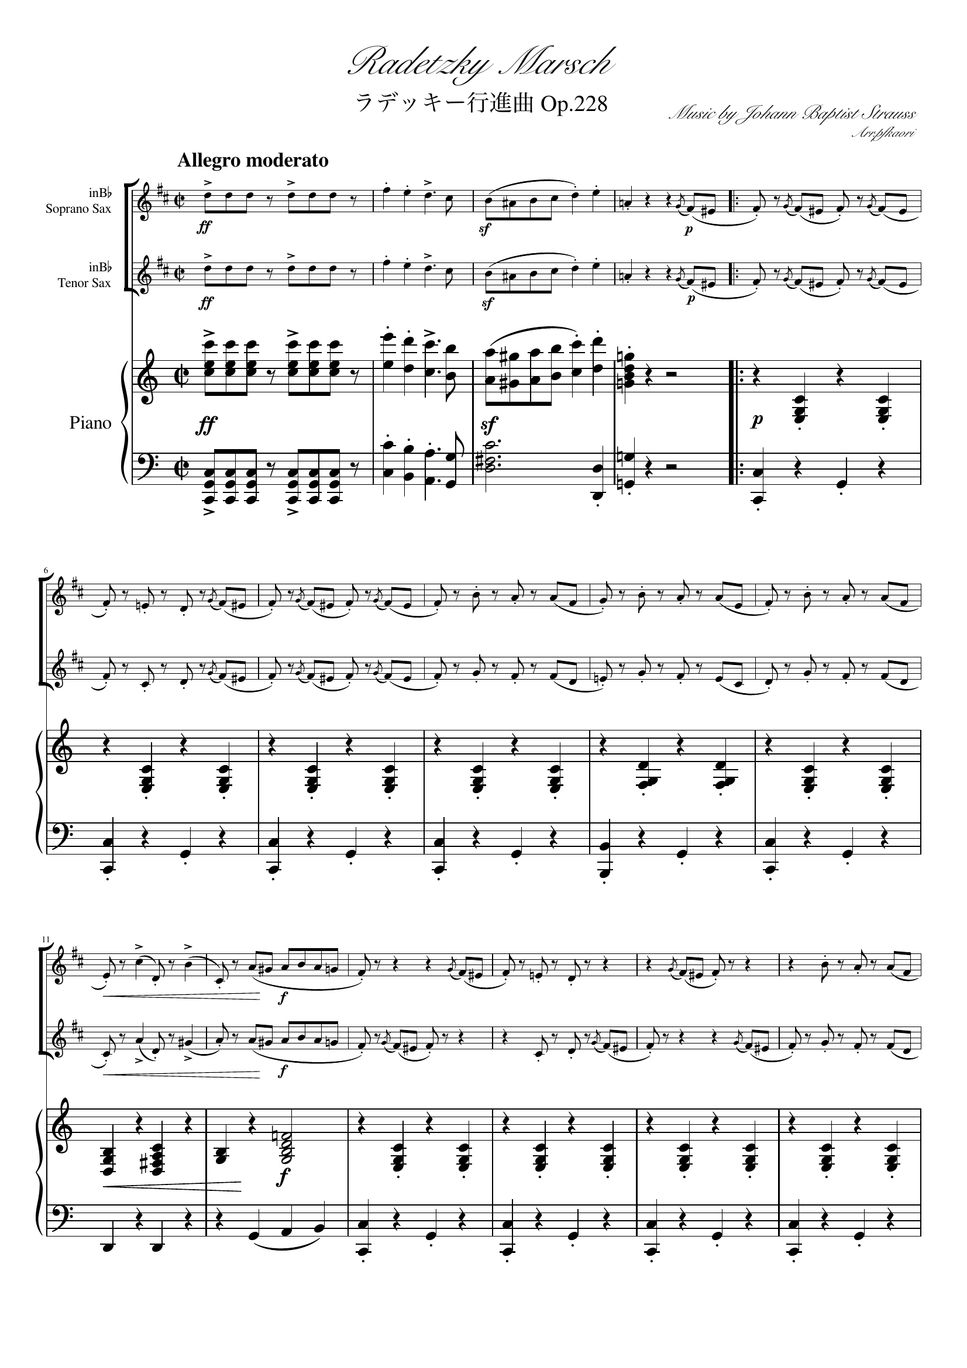 ヨハンシュトラウス1世 - ラデッキー行進曲 (C・ピアノトリオ/ソプラノサックス&テナーサックス) by pfkaori